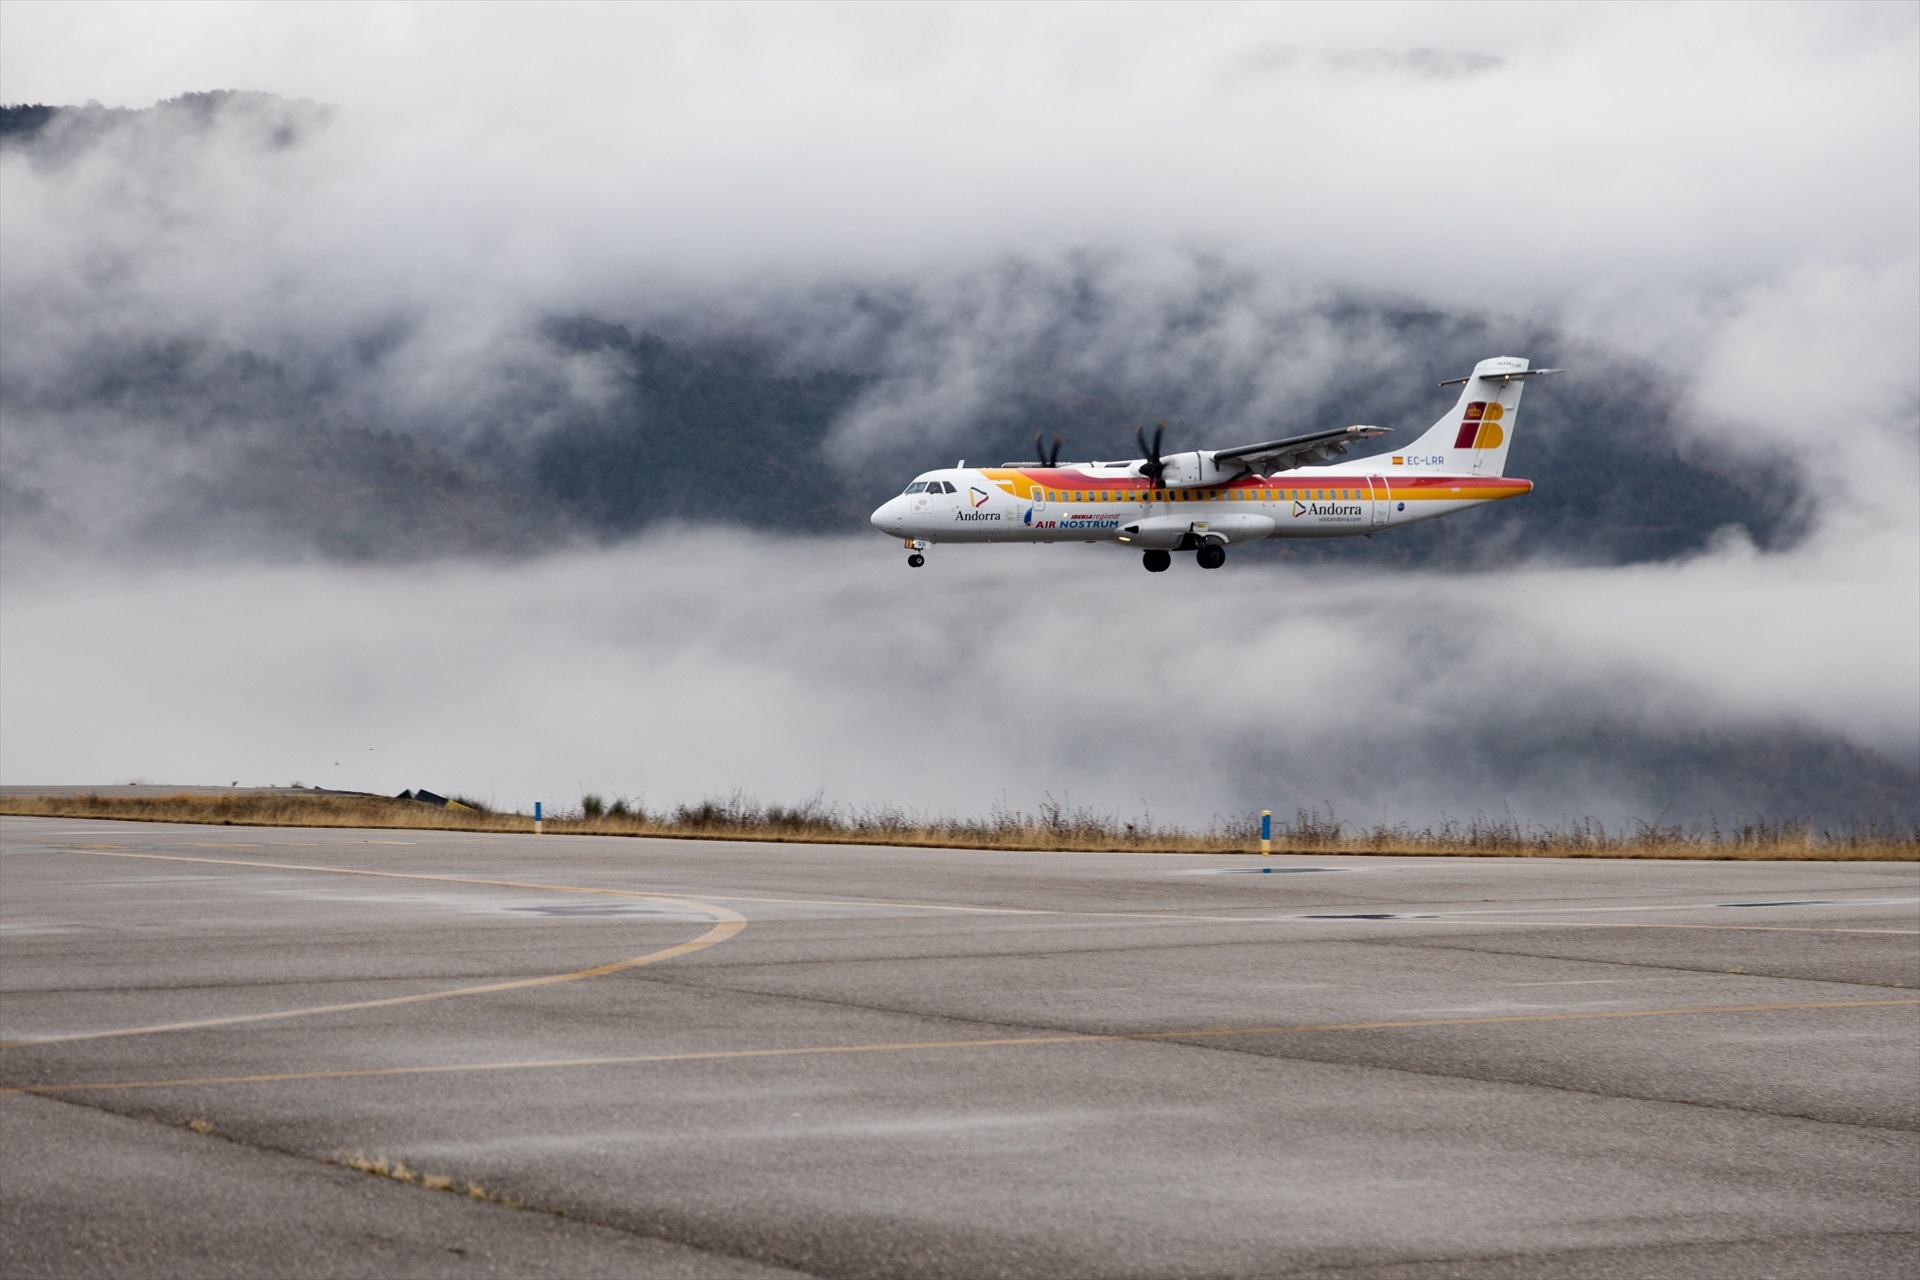 L'aeroport d'Andorra-la Seu rep crítiques per portar pràcticament només turistes a Andorra